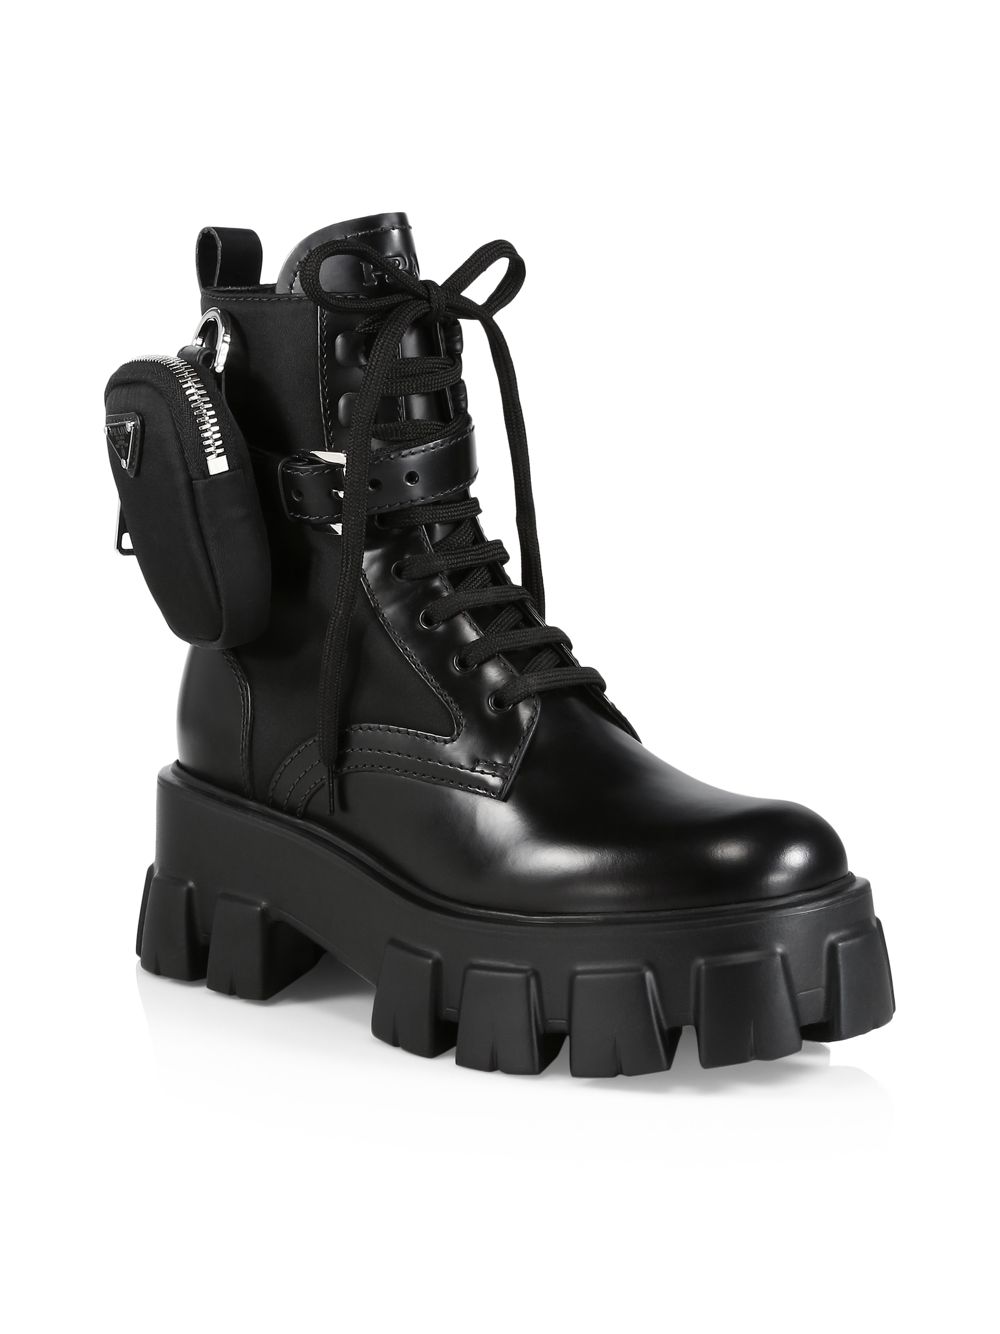 Армейские ботинки с кожаной и нейлоновой подошвой Monolith 55 Prada –заказать по доступной цене из-за рубежа в «CDEK.Shopping»